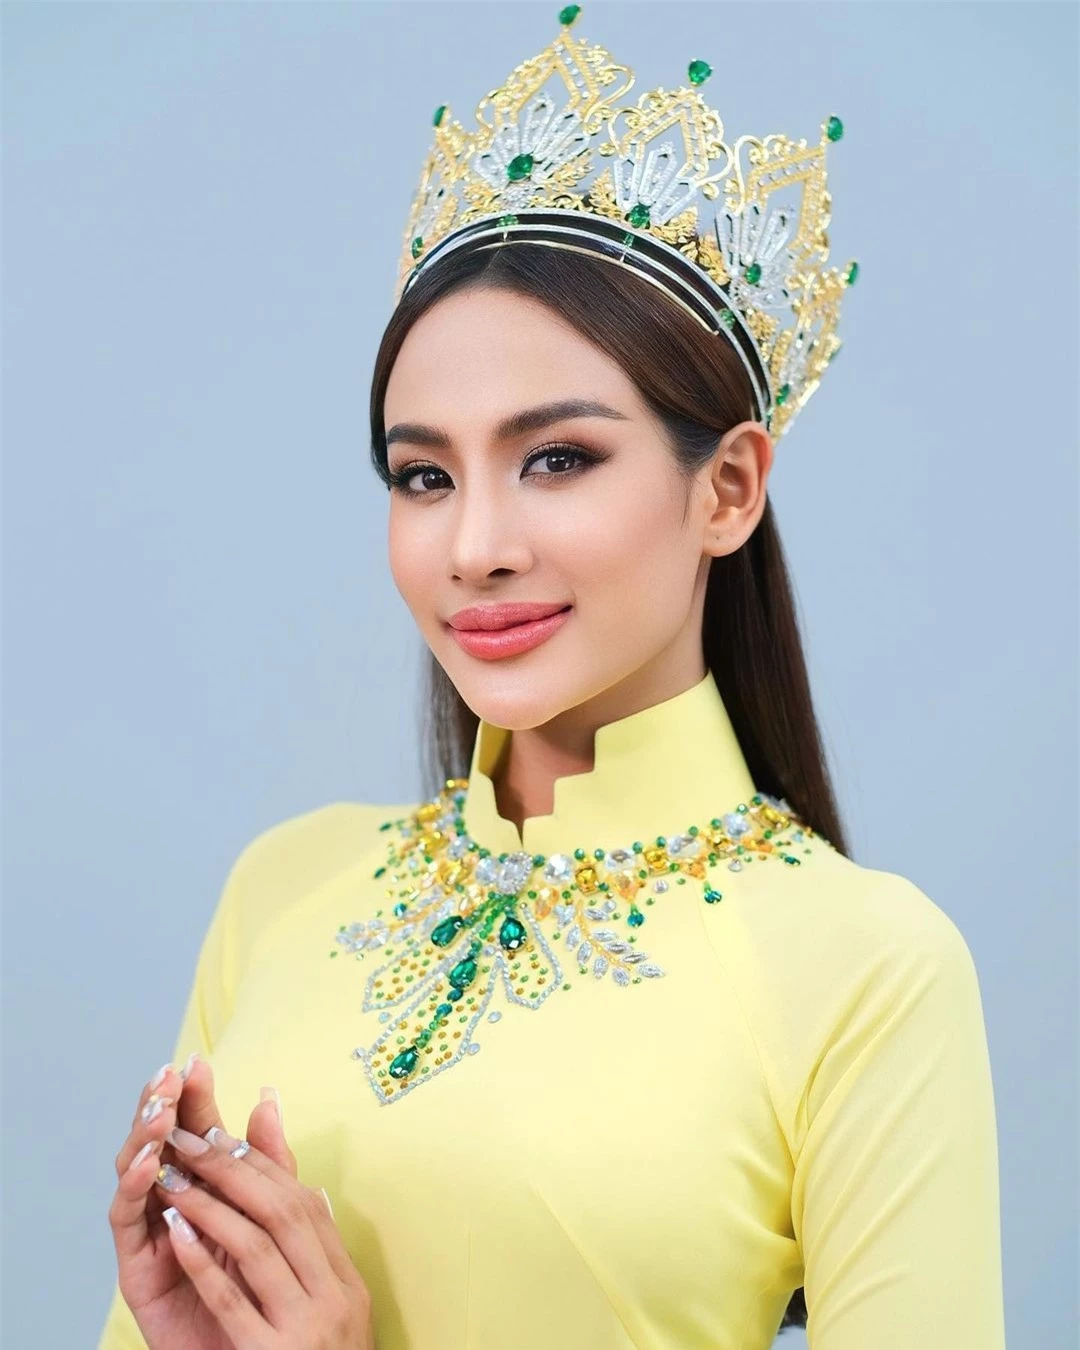 Hoa hậu Hòa bình Campuchia mặc áo dài, nói tiếng Việt ảnh 1